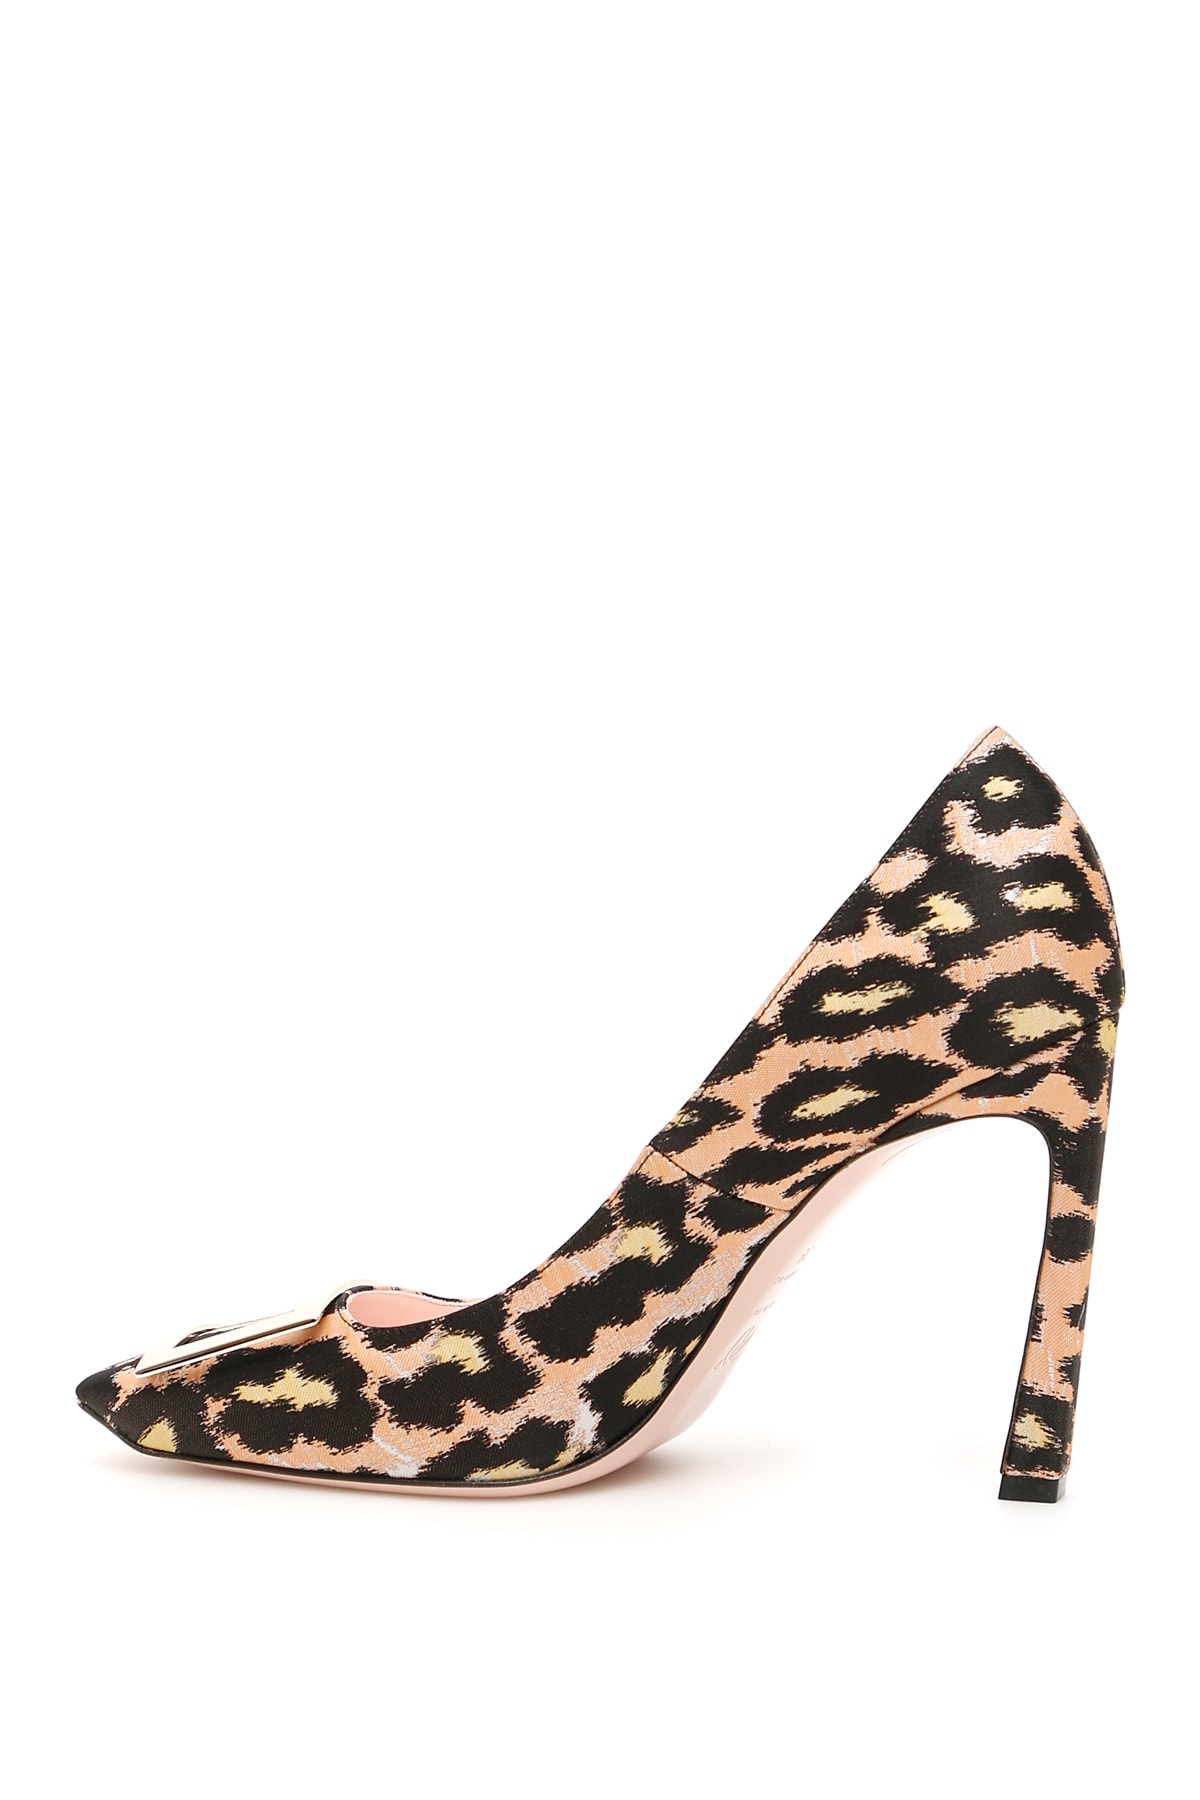 roger vivier leopard shoes